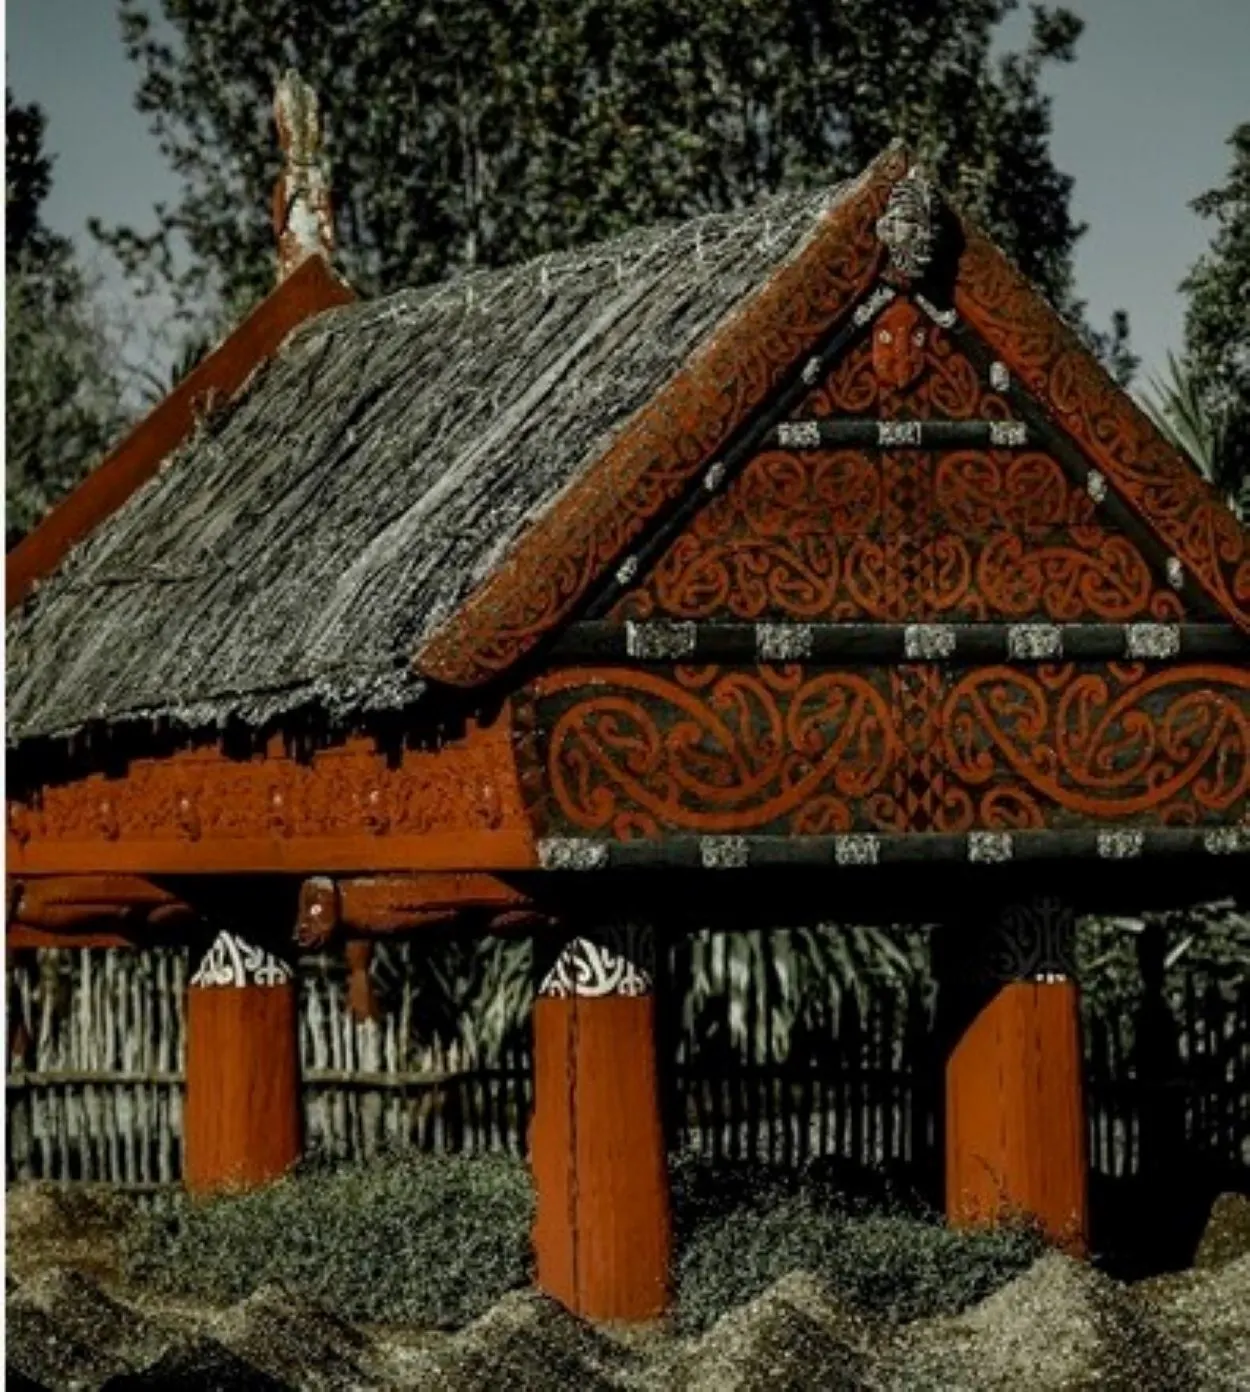  ຄວາມແຕກຕ່າງລະຫວ່າງ Samoan, Maori, ແລະ Hawaiian ແມ່ນຫຍັງ? (ສົນທະນາ) - ຄວາມແຕກຕ່າງທັງຫມົດ